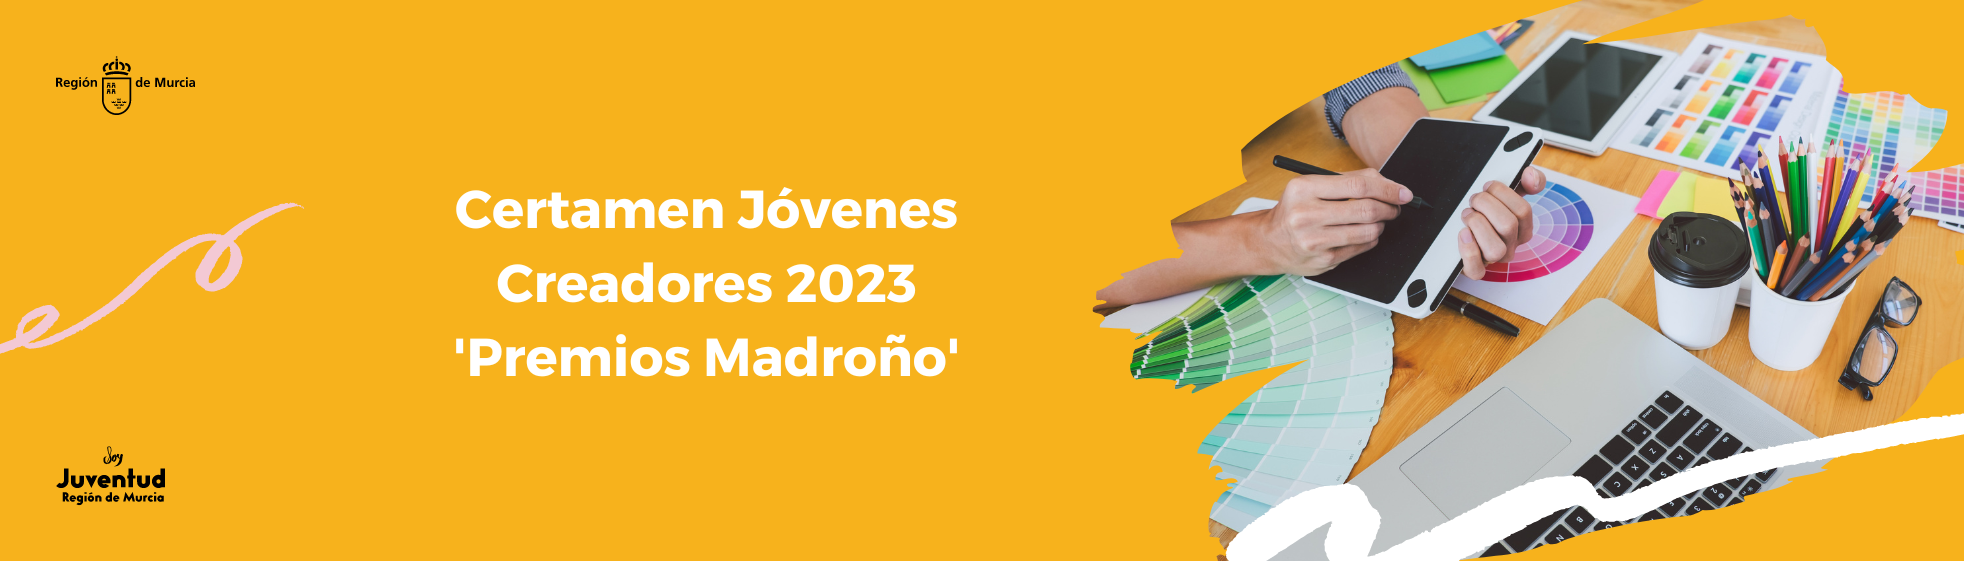 Certamen Jóvenes Creadores 2023 'Premios Madroño'